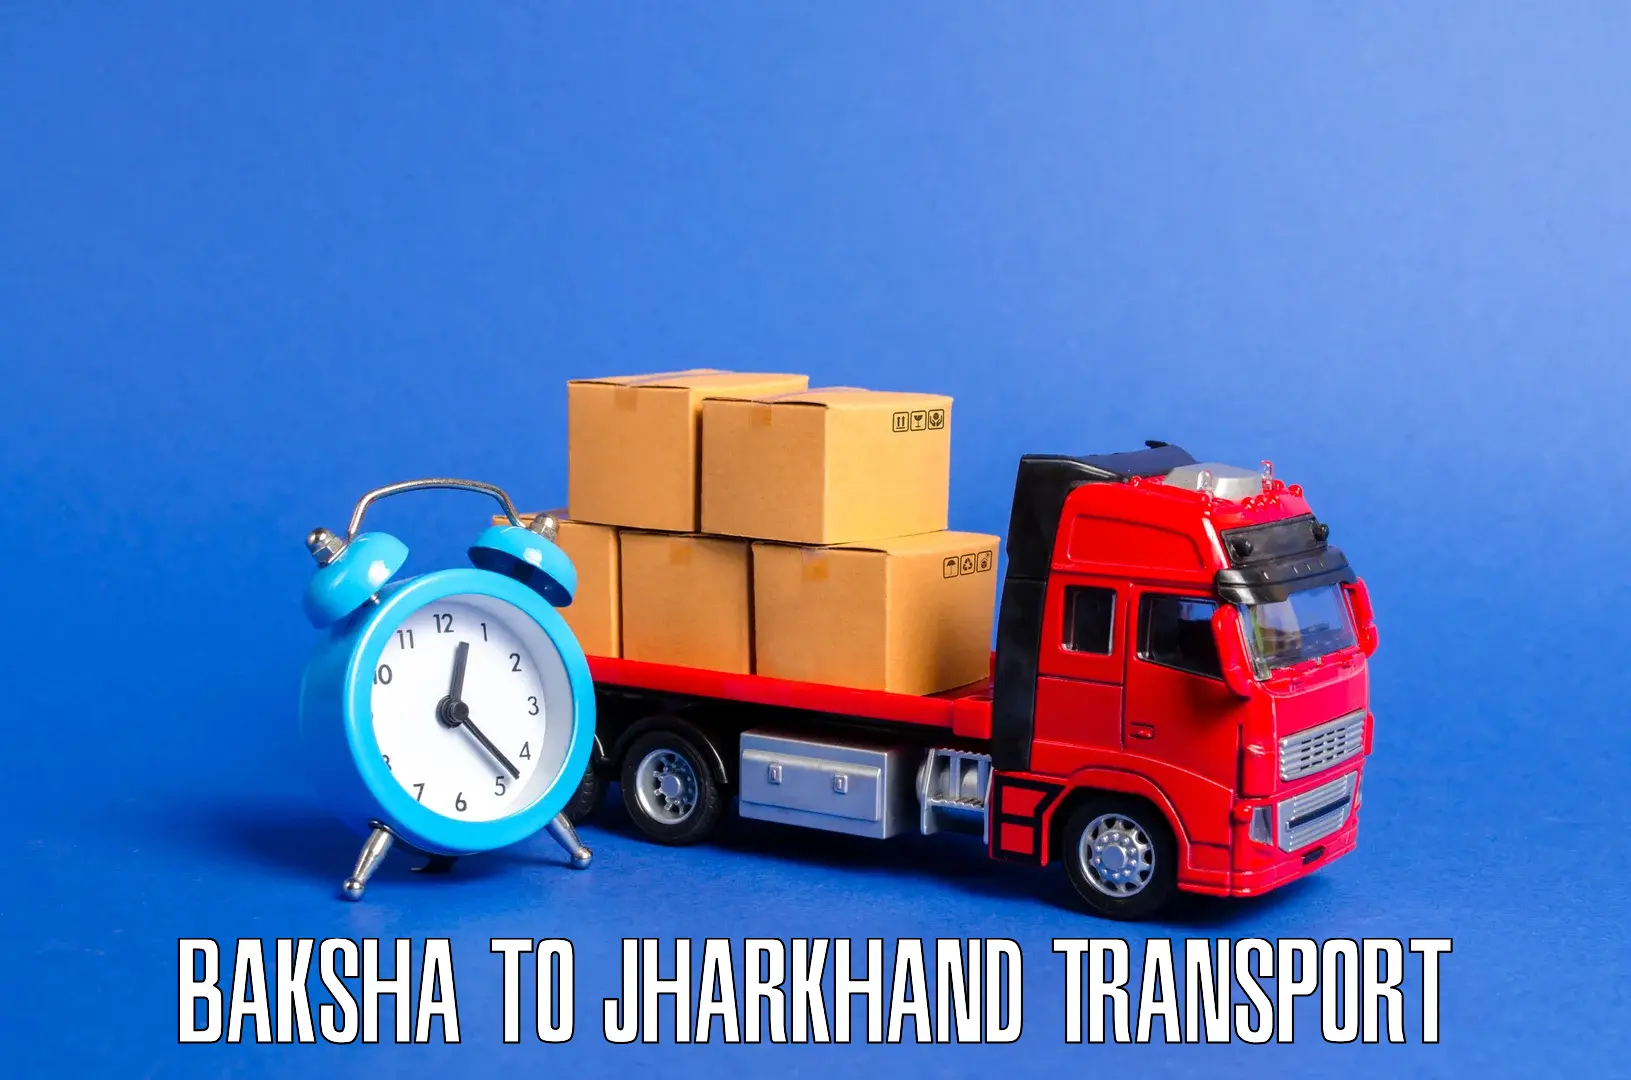 Furniture transport service Baksha to Koderma